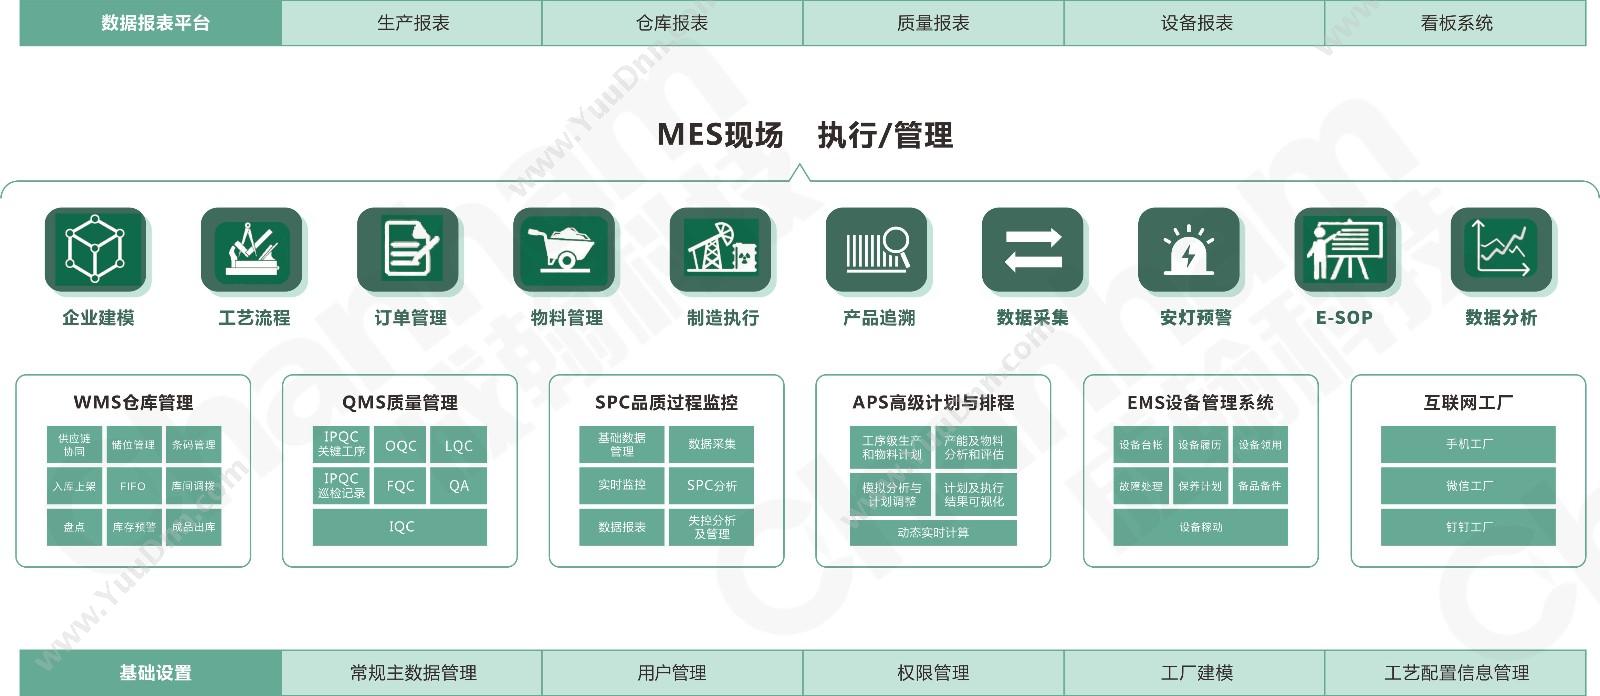 深圳市成翰科技有限公司 成翰MES平台 生产与运营